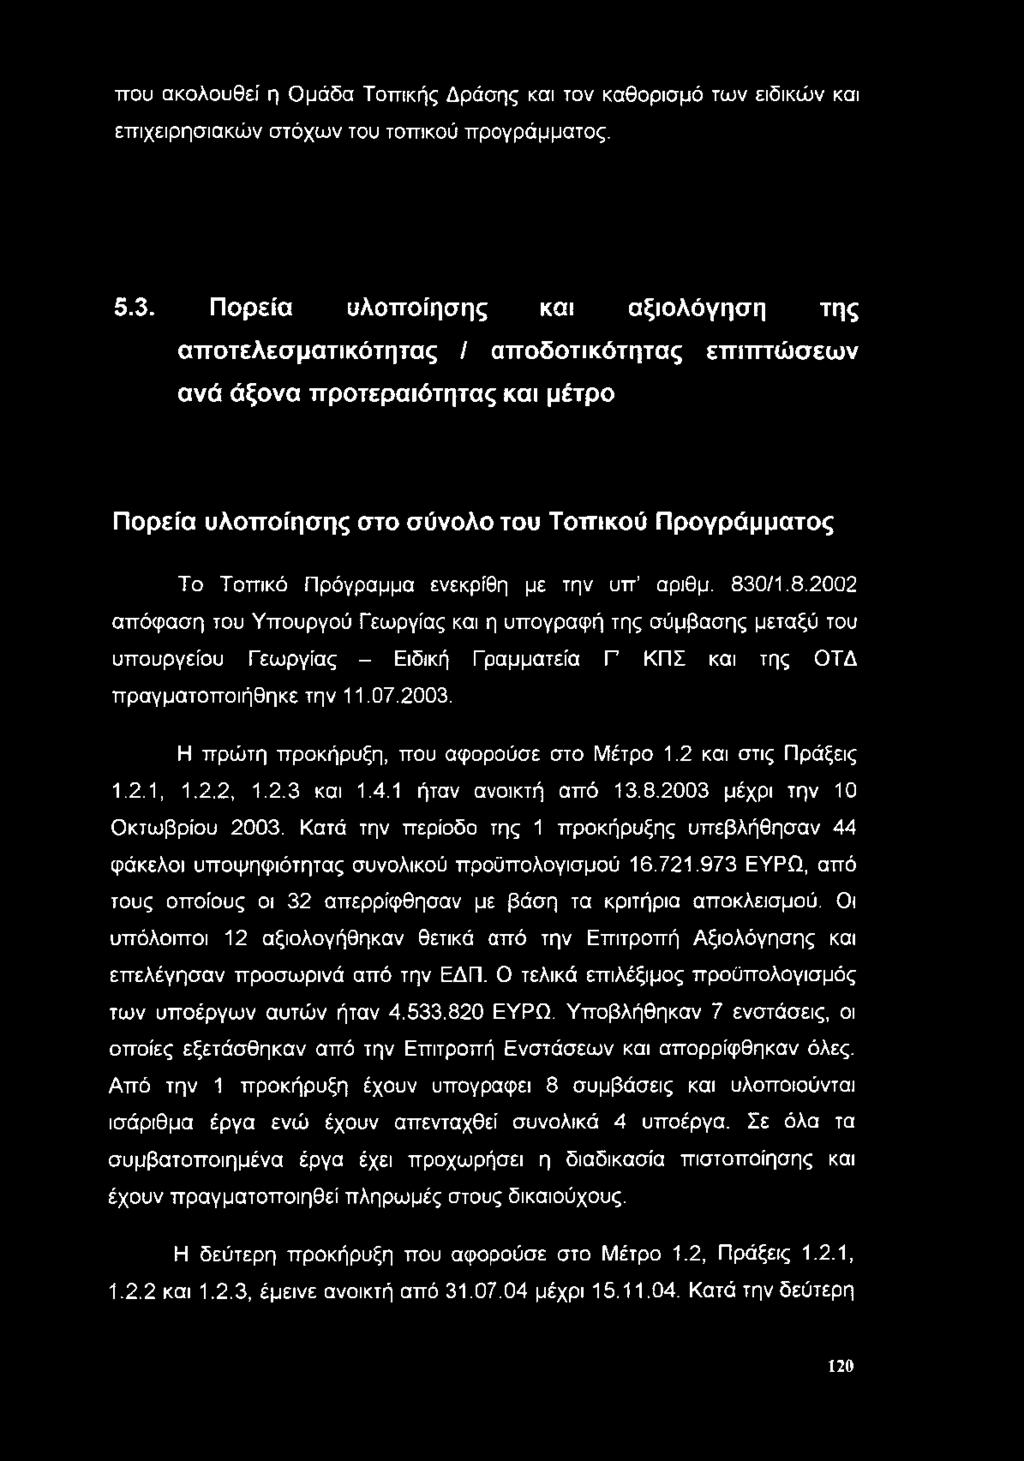 ενεκρίθη με την υπ αριθμ. 830/1.8.2002 απόφαση του Υπουργού Γεωργίας και η υπογραφή της σύμβασης μεταξύ του υπουργείου Γεωργίας - Ειδική Γραμματεία Γ ΚΠΣ και της ΟΤΔ πραγματοποιήθηκε την 11.07.2003.